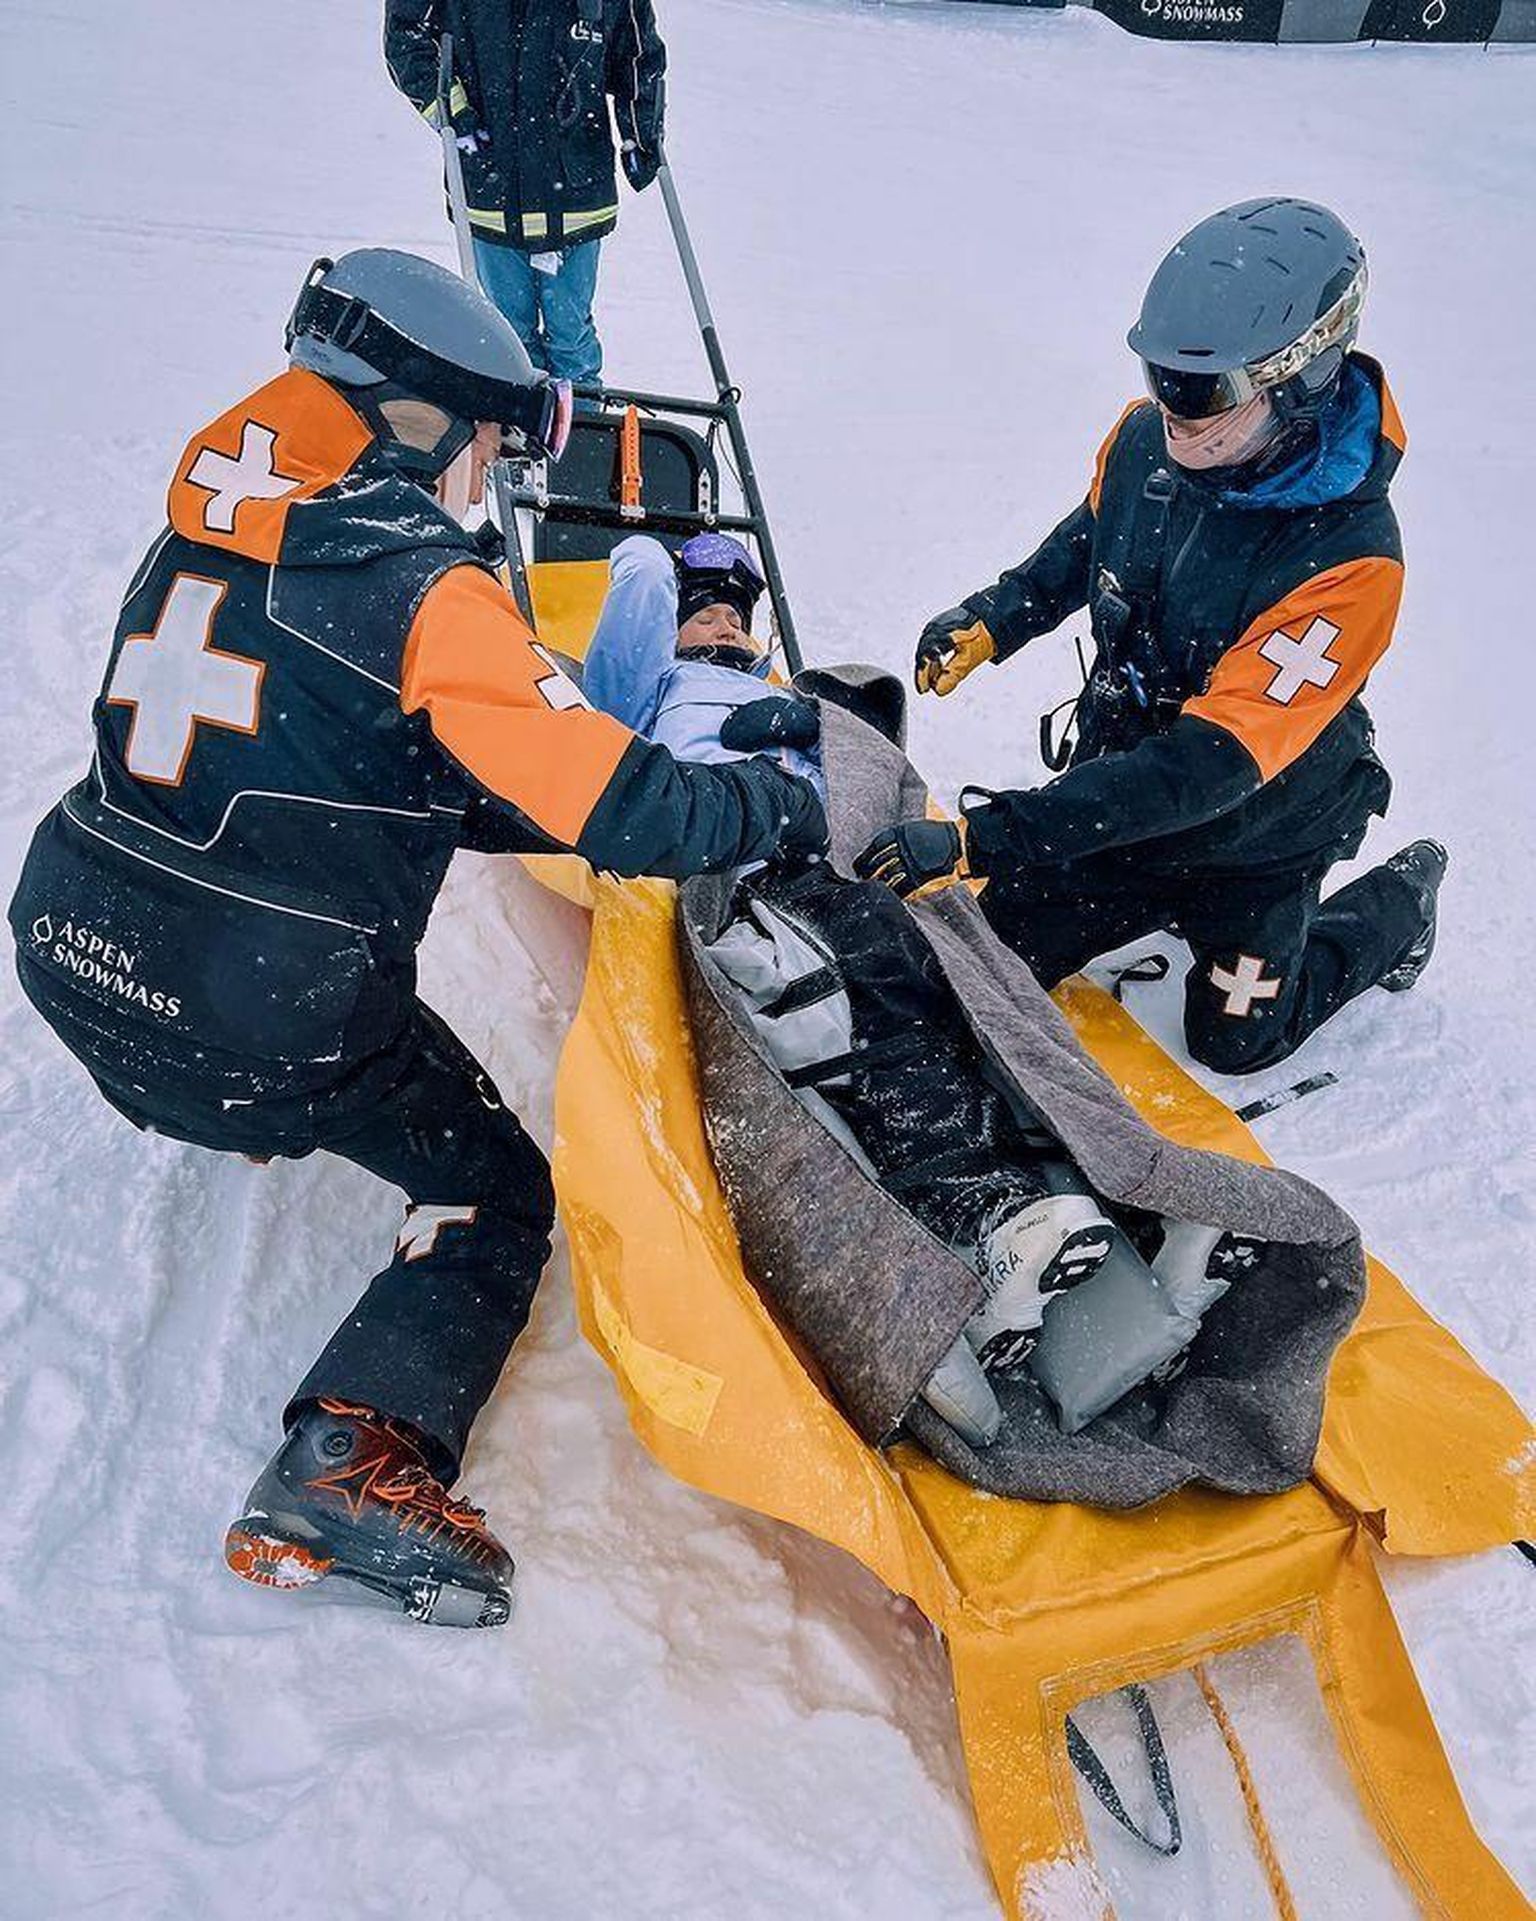 Келли Сильдару кладут на носилки и уносят с горы - спортсменка получила серьезную травму накануне X-Games в Аспене.